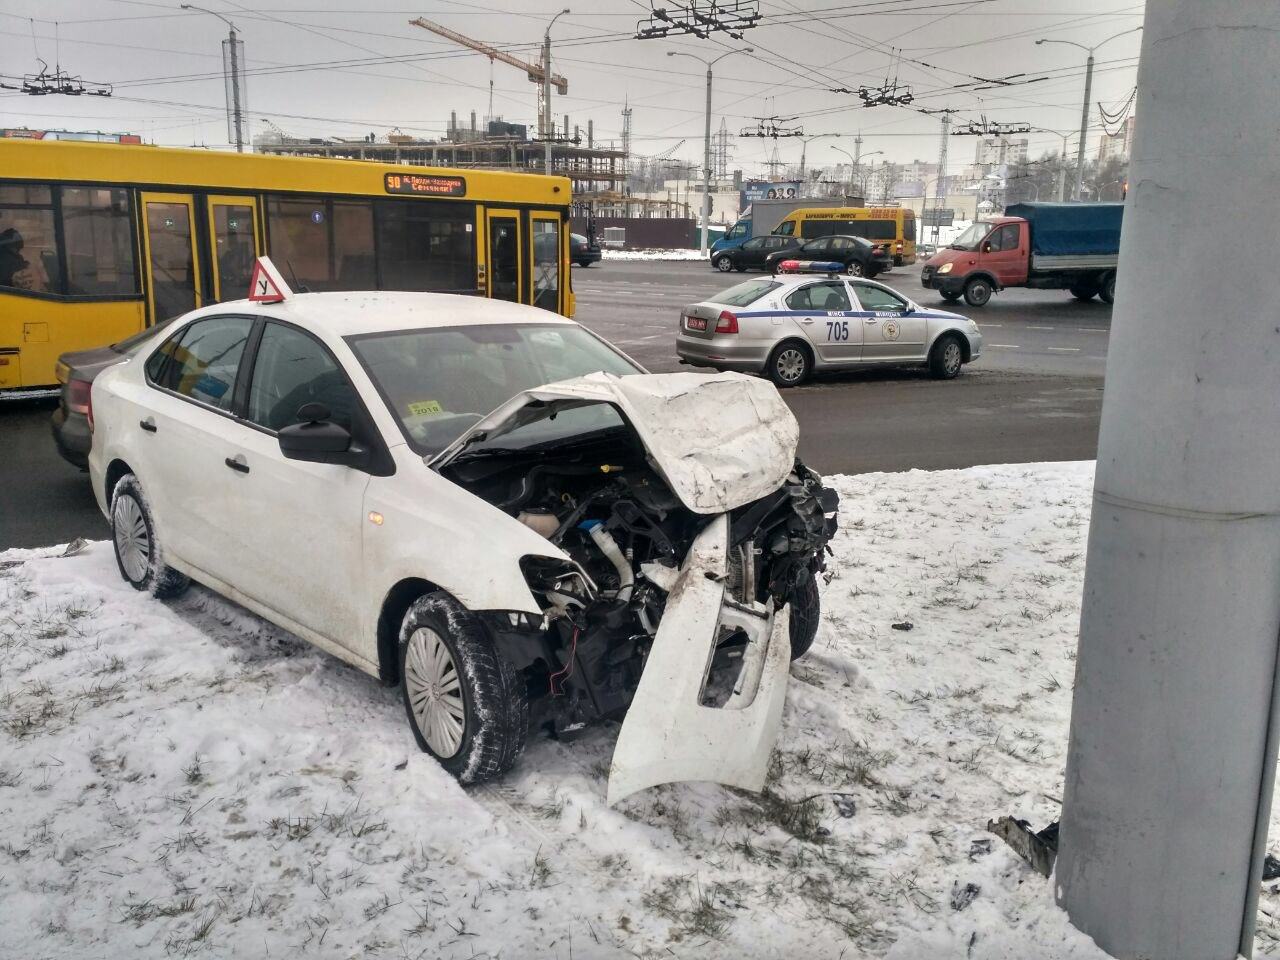 Учебное авто попало в серьезное ДТП в Минске